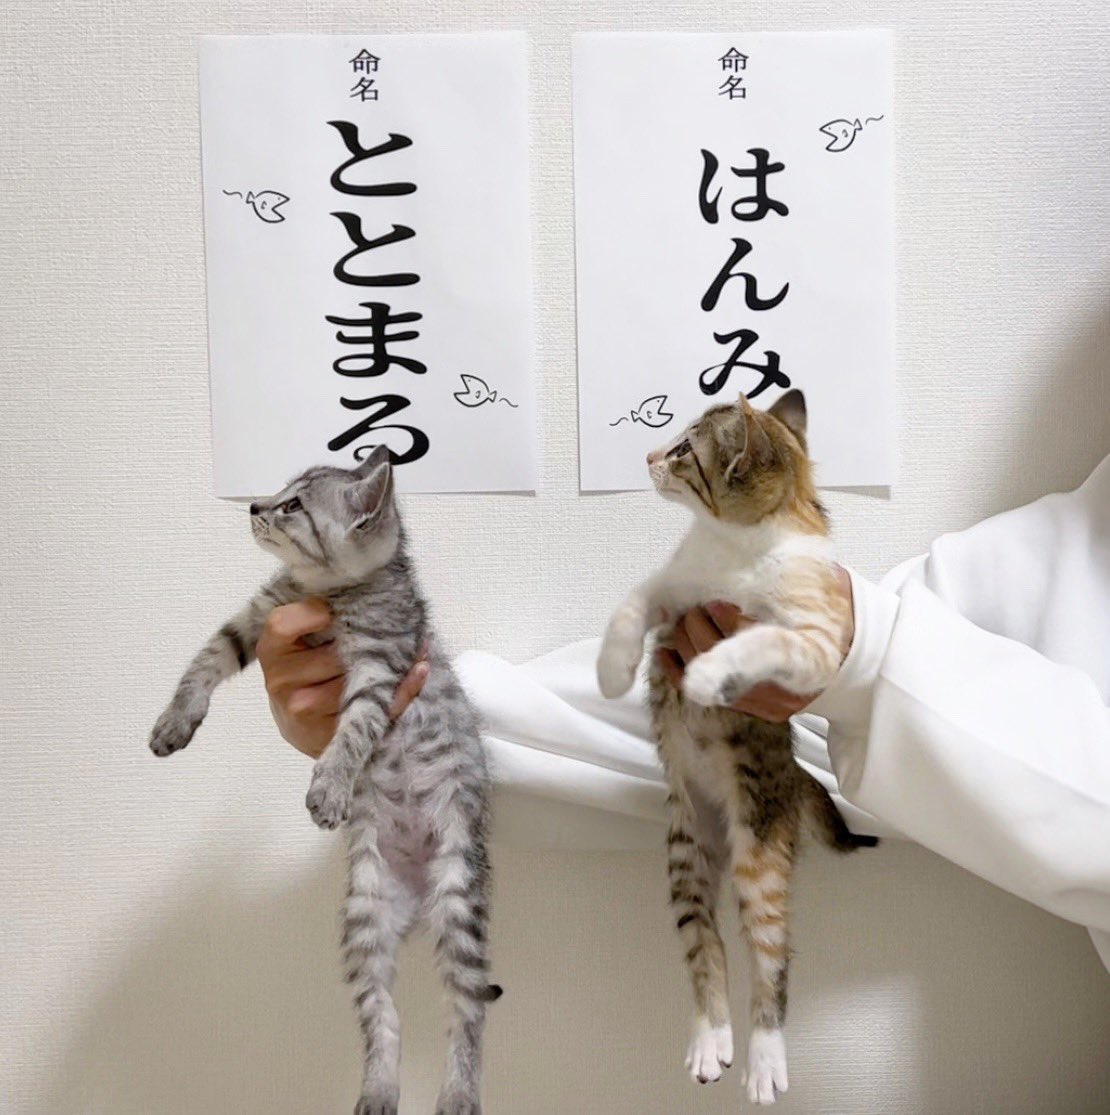 Кот стасик и ленка. Милые корейские имена для котиков девочкам.